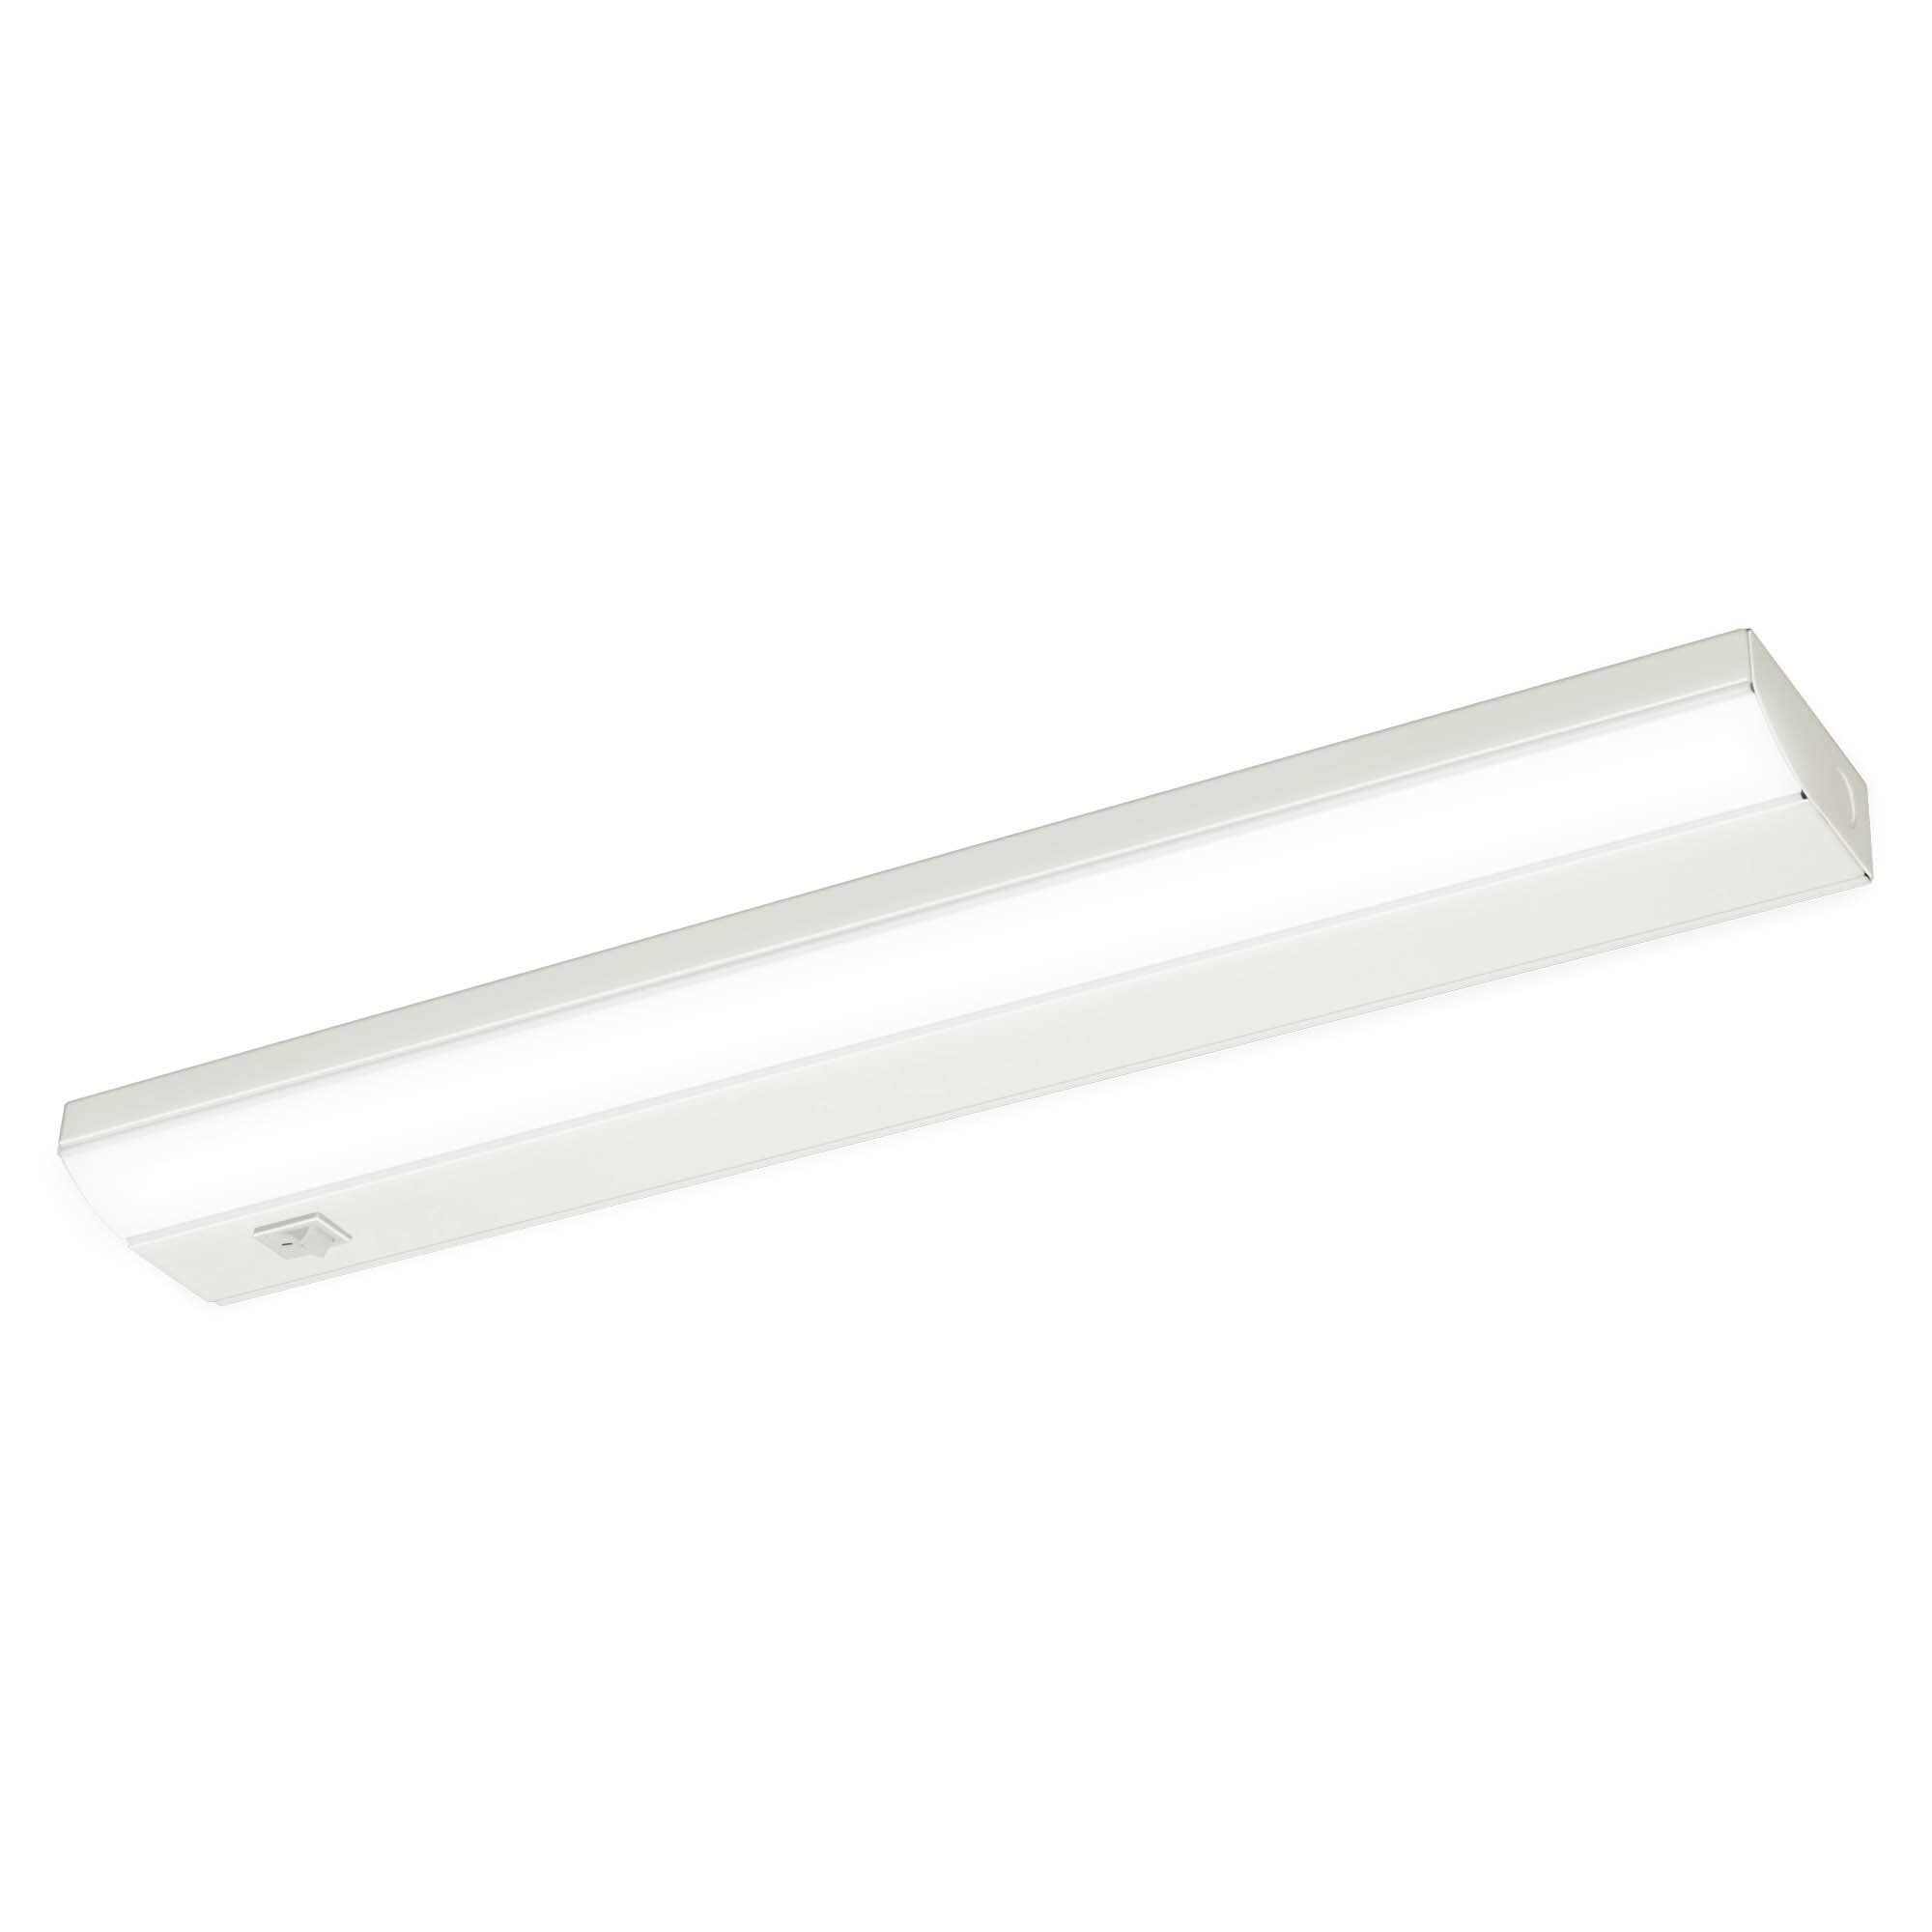 Ecolight Super Slim LED Plug In Under Cabinet Light Bar